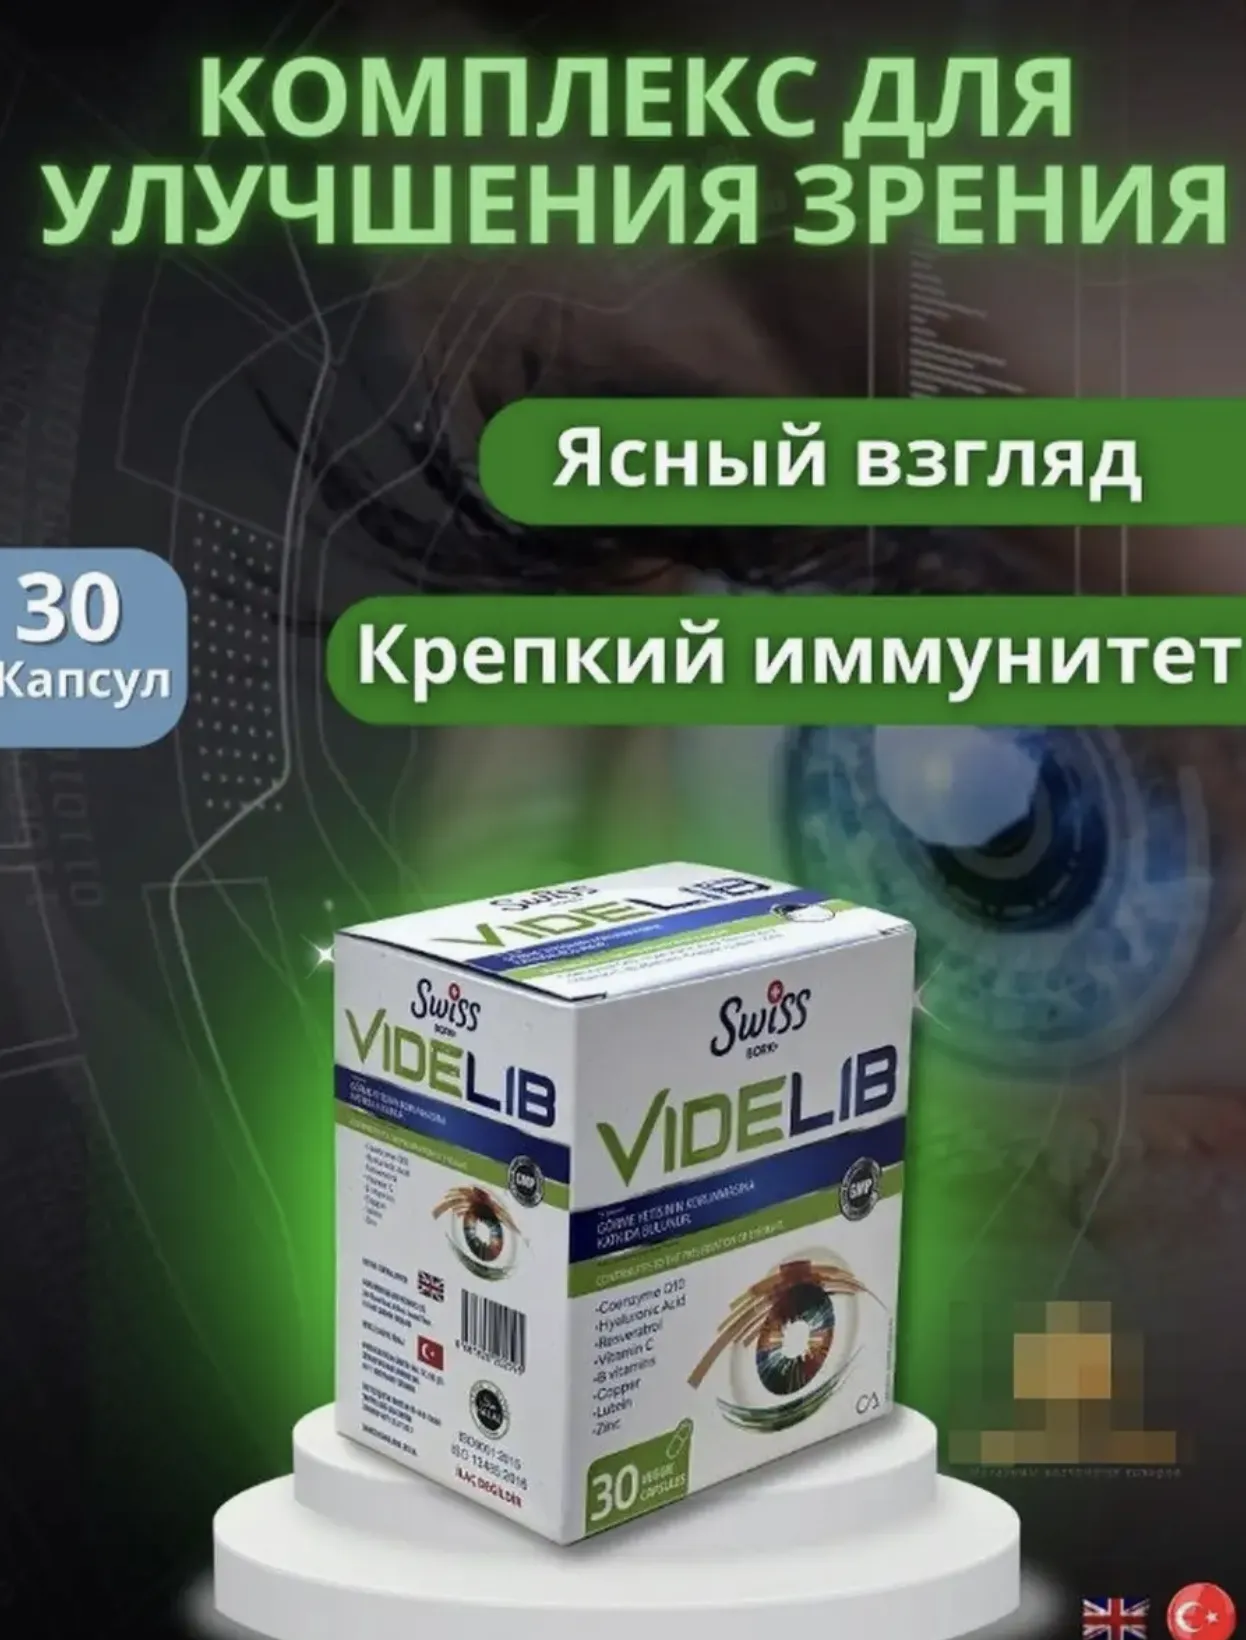 Комплекс витаминов Swiss Bork Videlib для поддержания здоровья глаз и сохранения остроты зрения#1